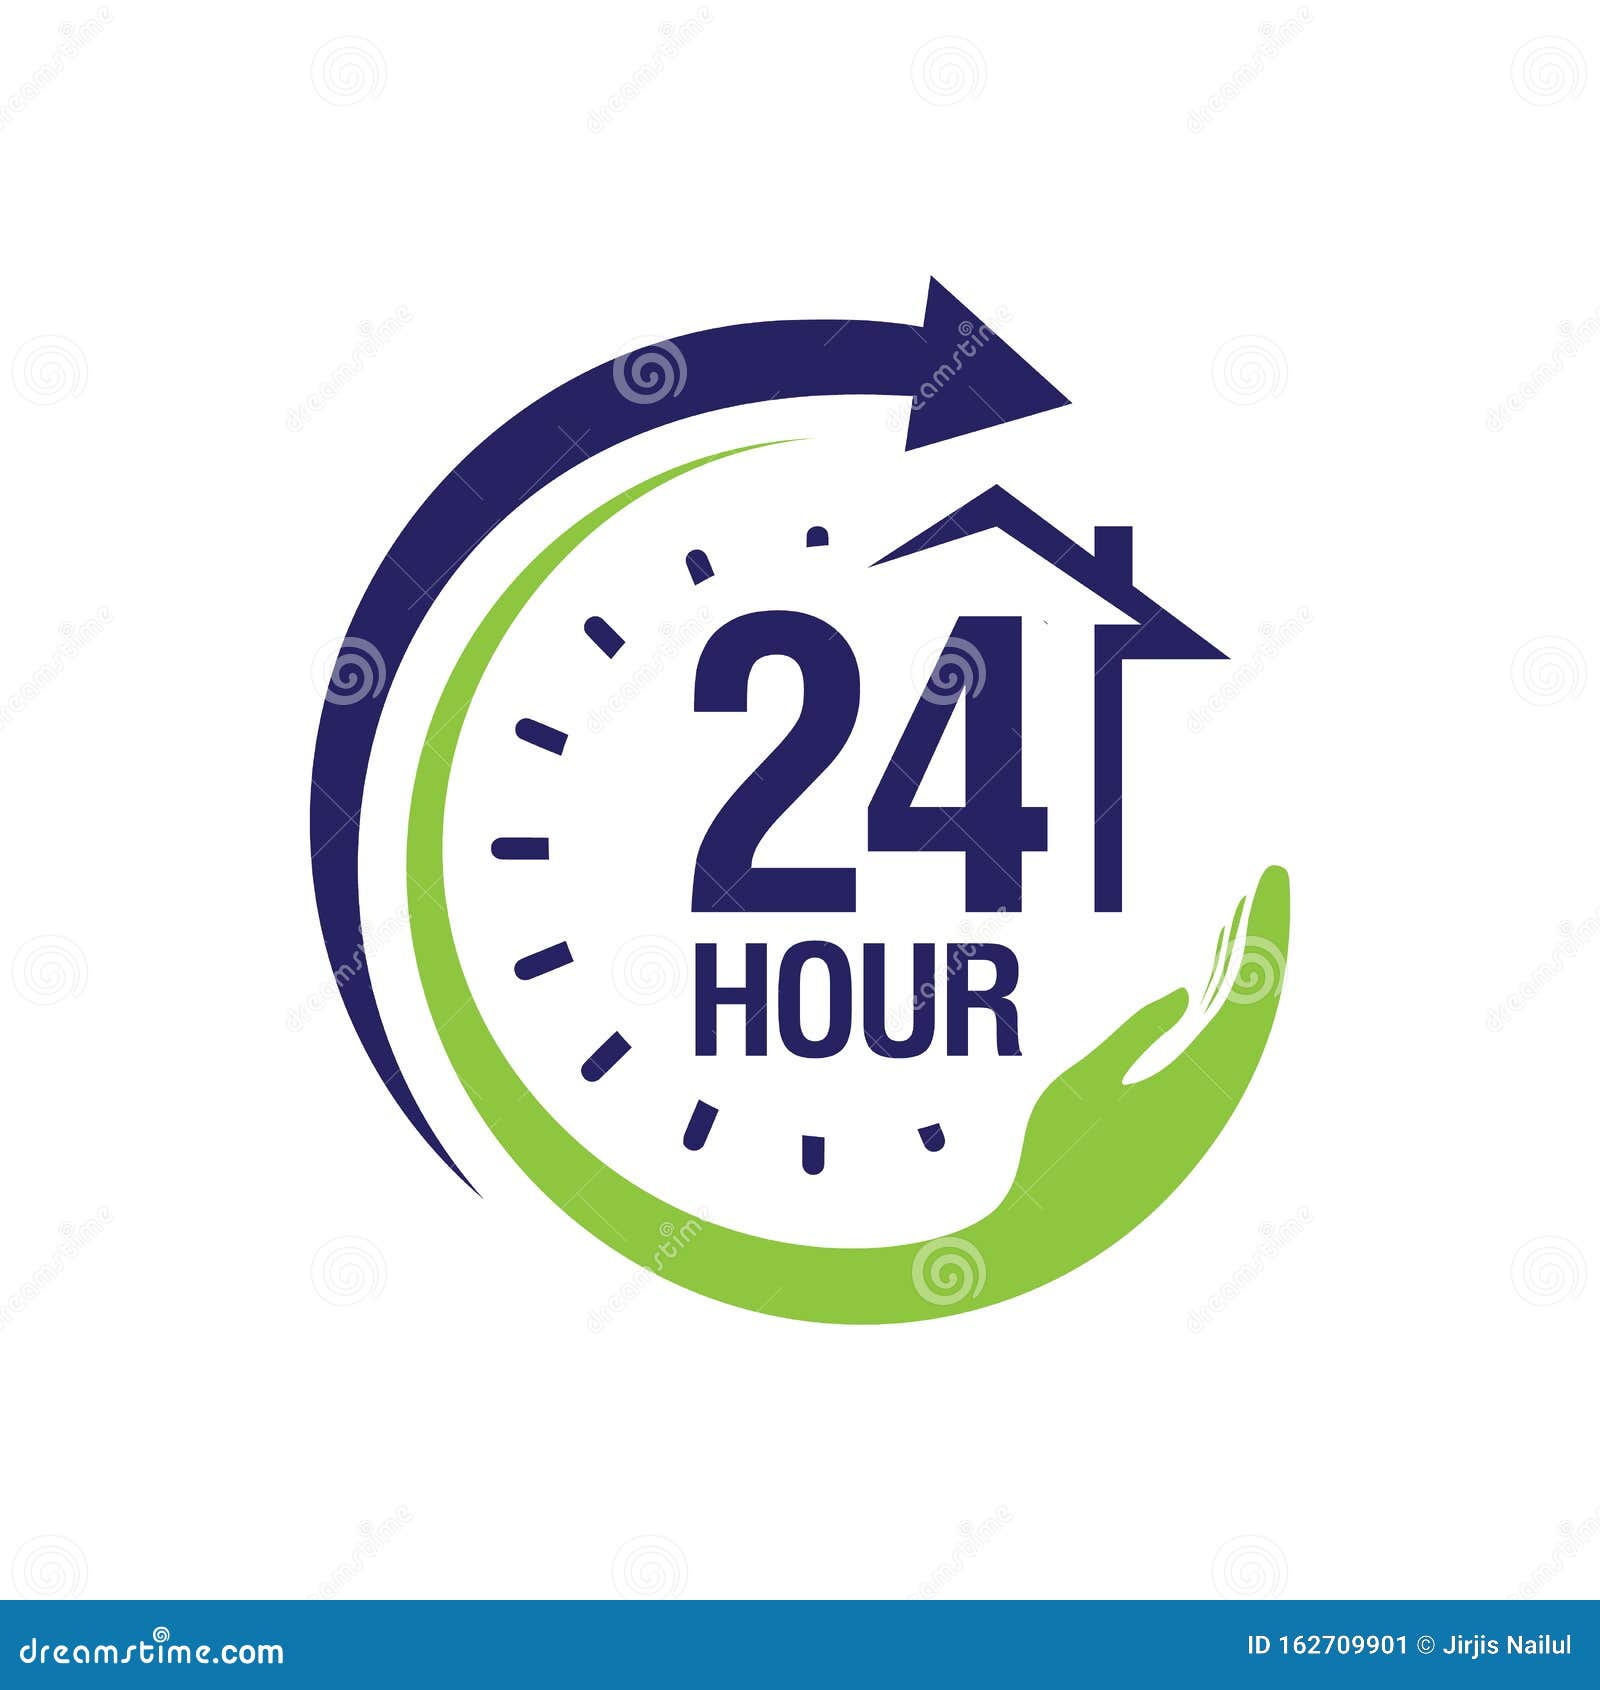 Dịch vụ chăm sóc y tế 24 giờ: Trong thời đại bận rộn này, sức khỏe là vô cùng quan trọng và đôi khi bạn cần sự chăm sóc y tế ngay lập tức. Với dịch vụ chăm sóc y tế 24 giờ của chúng tôi, bạn có thể yên tâm về sức khỏe của mình mọi lúc mọi nơi.